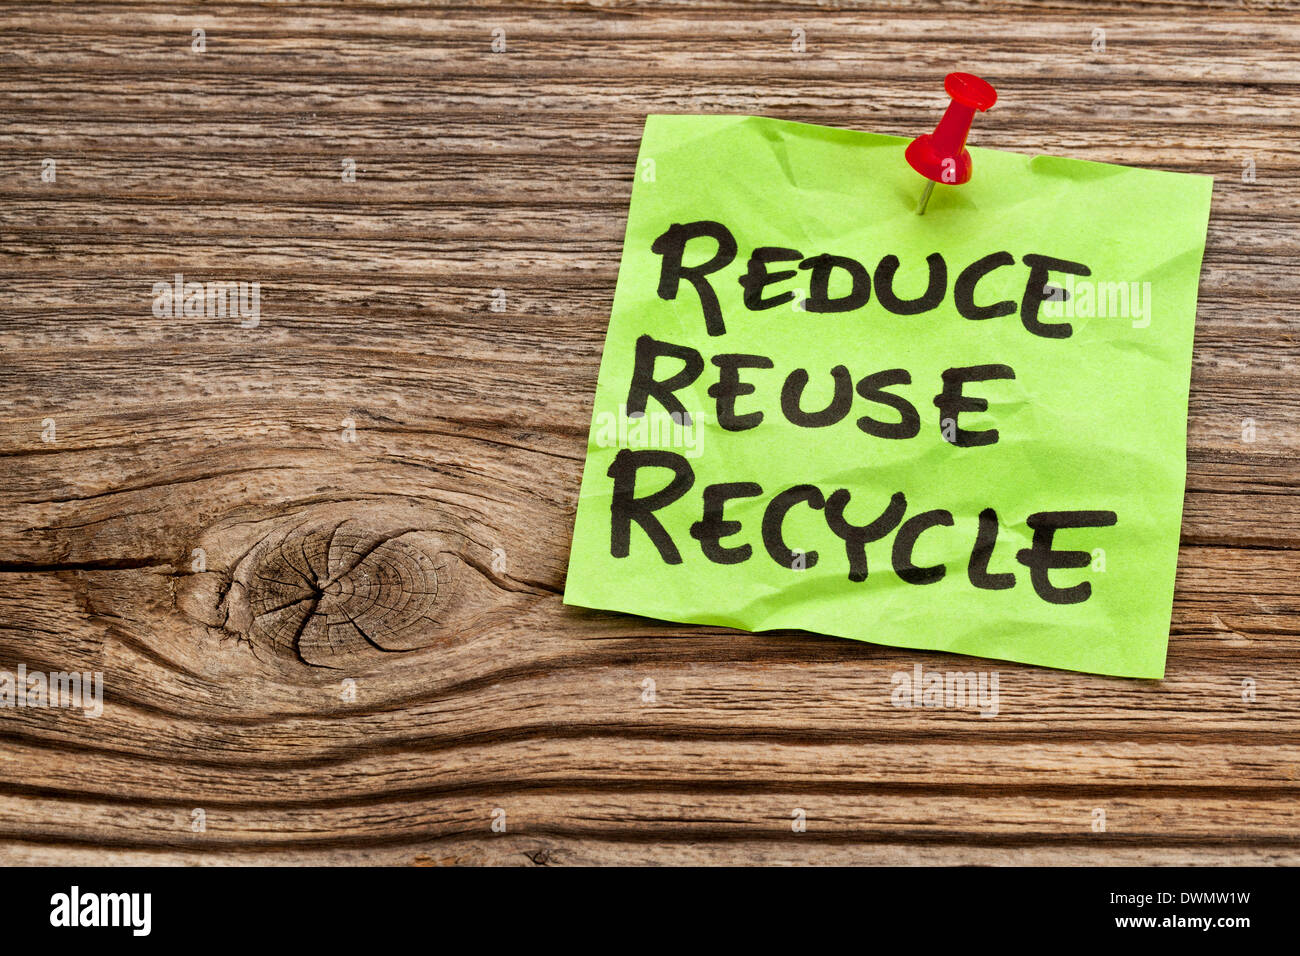 Reducir, reutilizar y reciclar nota recordatorio contra la madera de grano - concepto de conservación de recursos Foto de stock